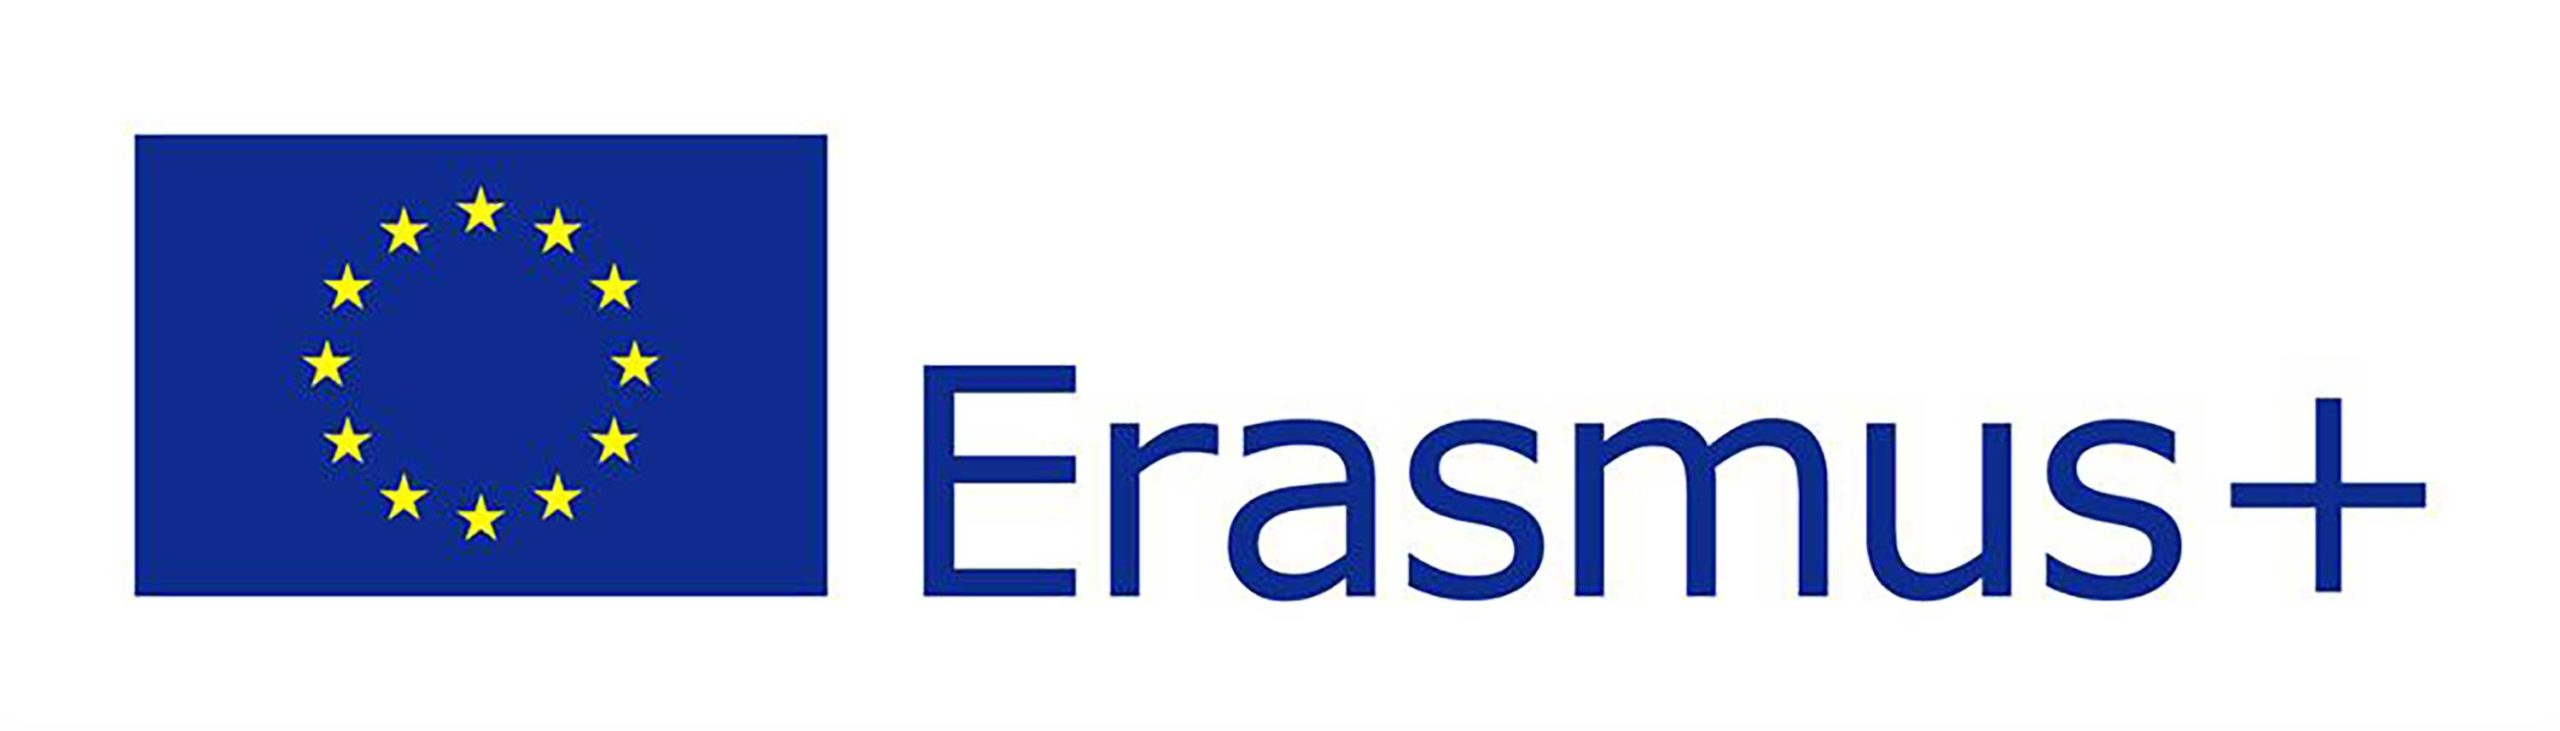 logo-erasmusplus-eu